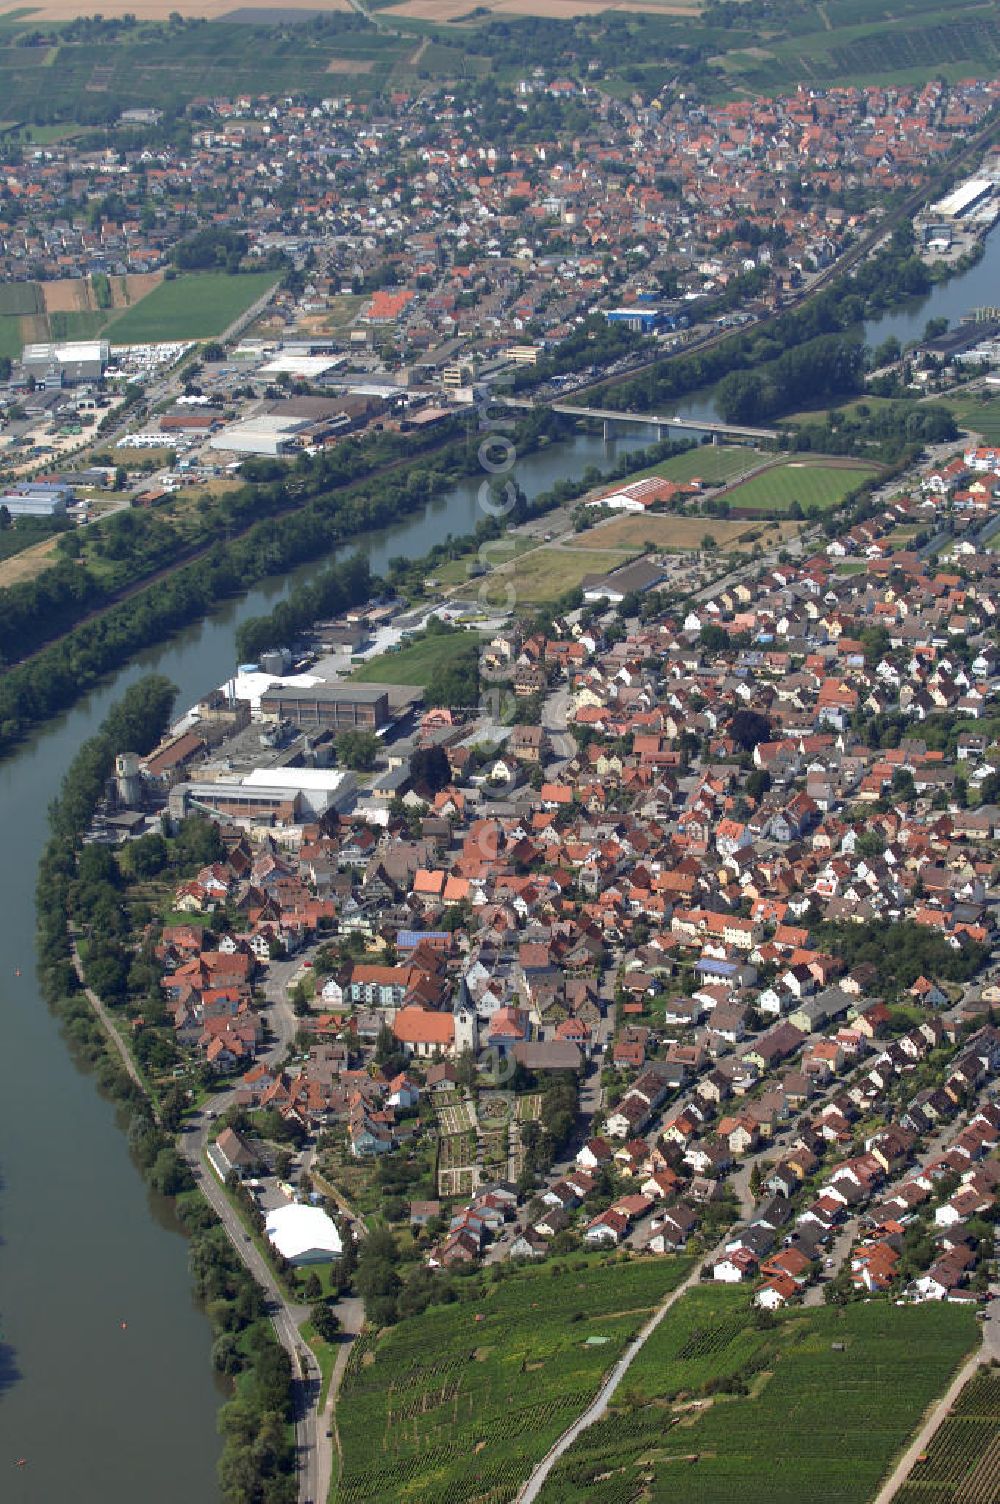 Gemmrigheim from above - Blick über Gemmrigheim und Kirchheim am Neckar. Erkennen kann man u. a. eine Brücke die über den Neckar geht und die Firma Steinbeis Temming Papier GmbH & Co.